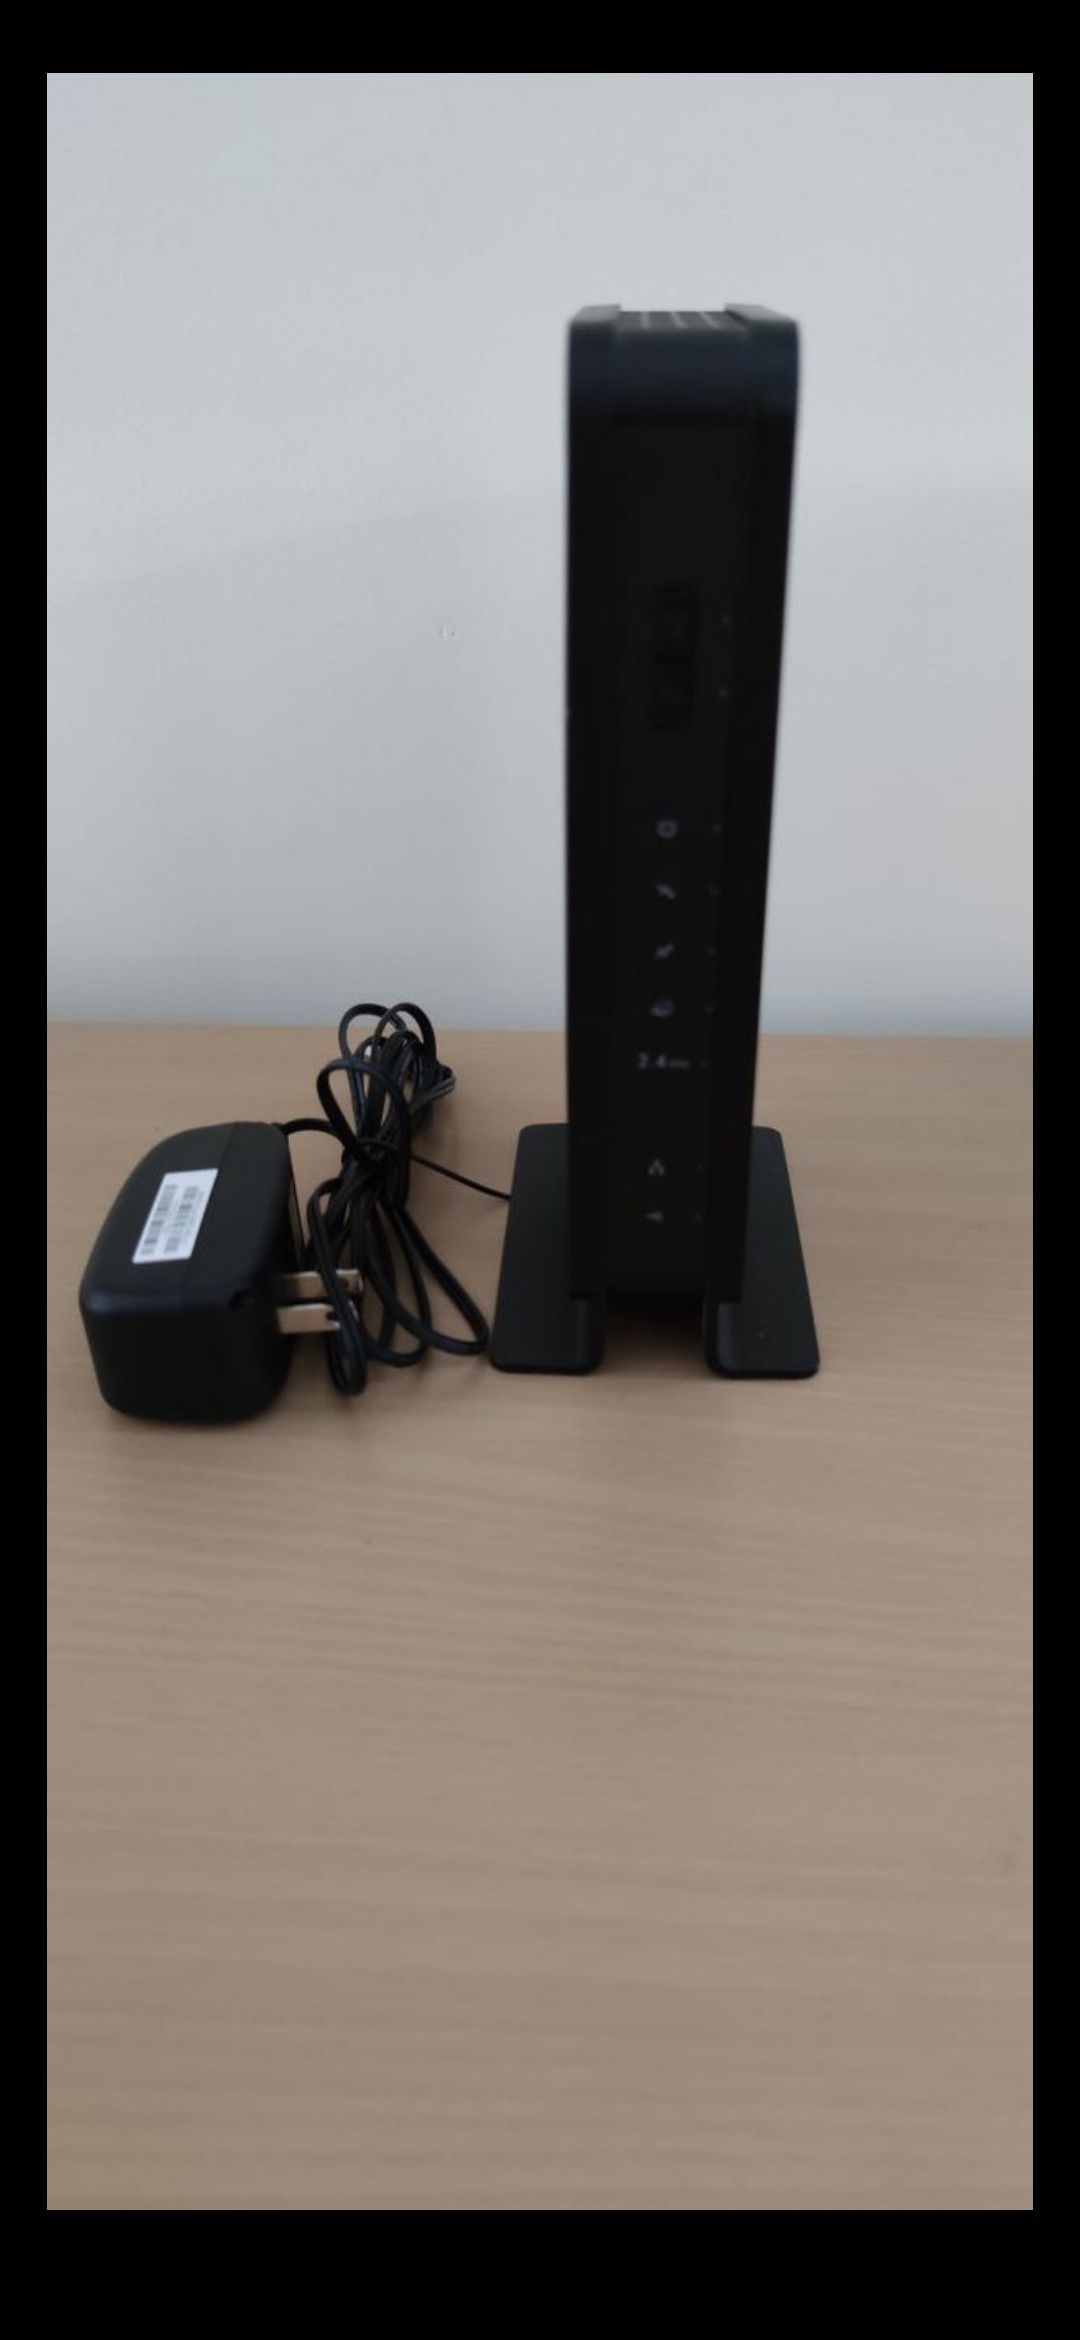 Netgear WiFi Modem Router. Comcast/Xfinity